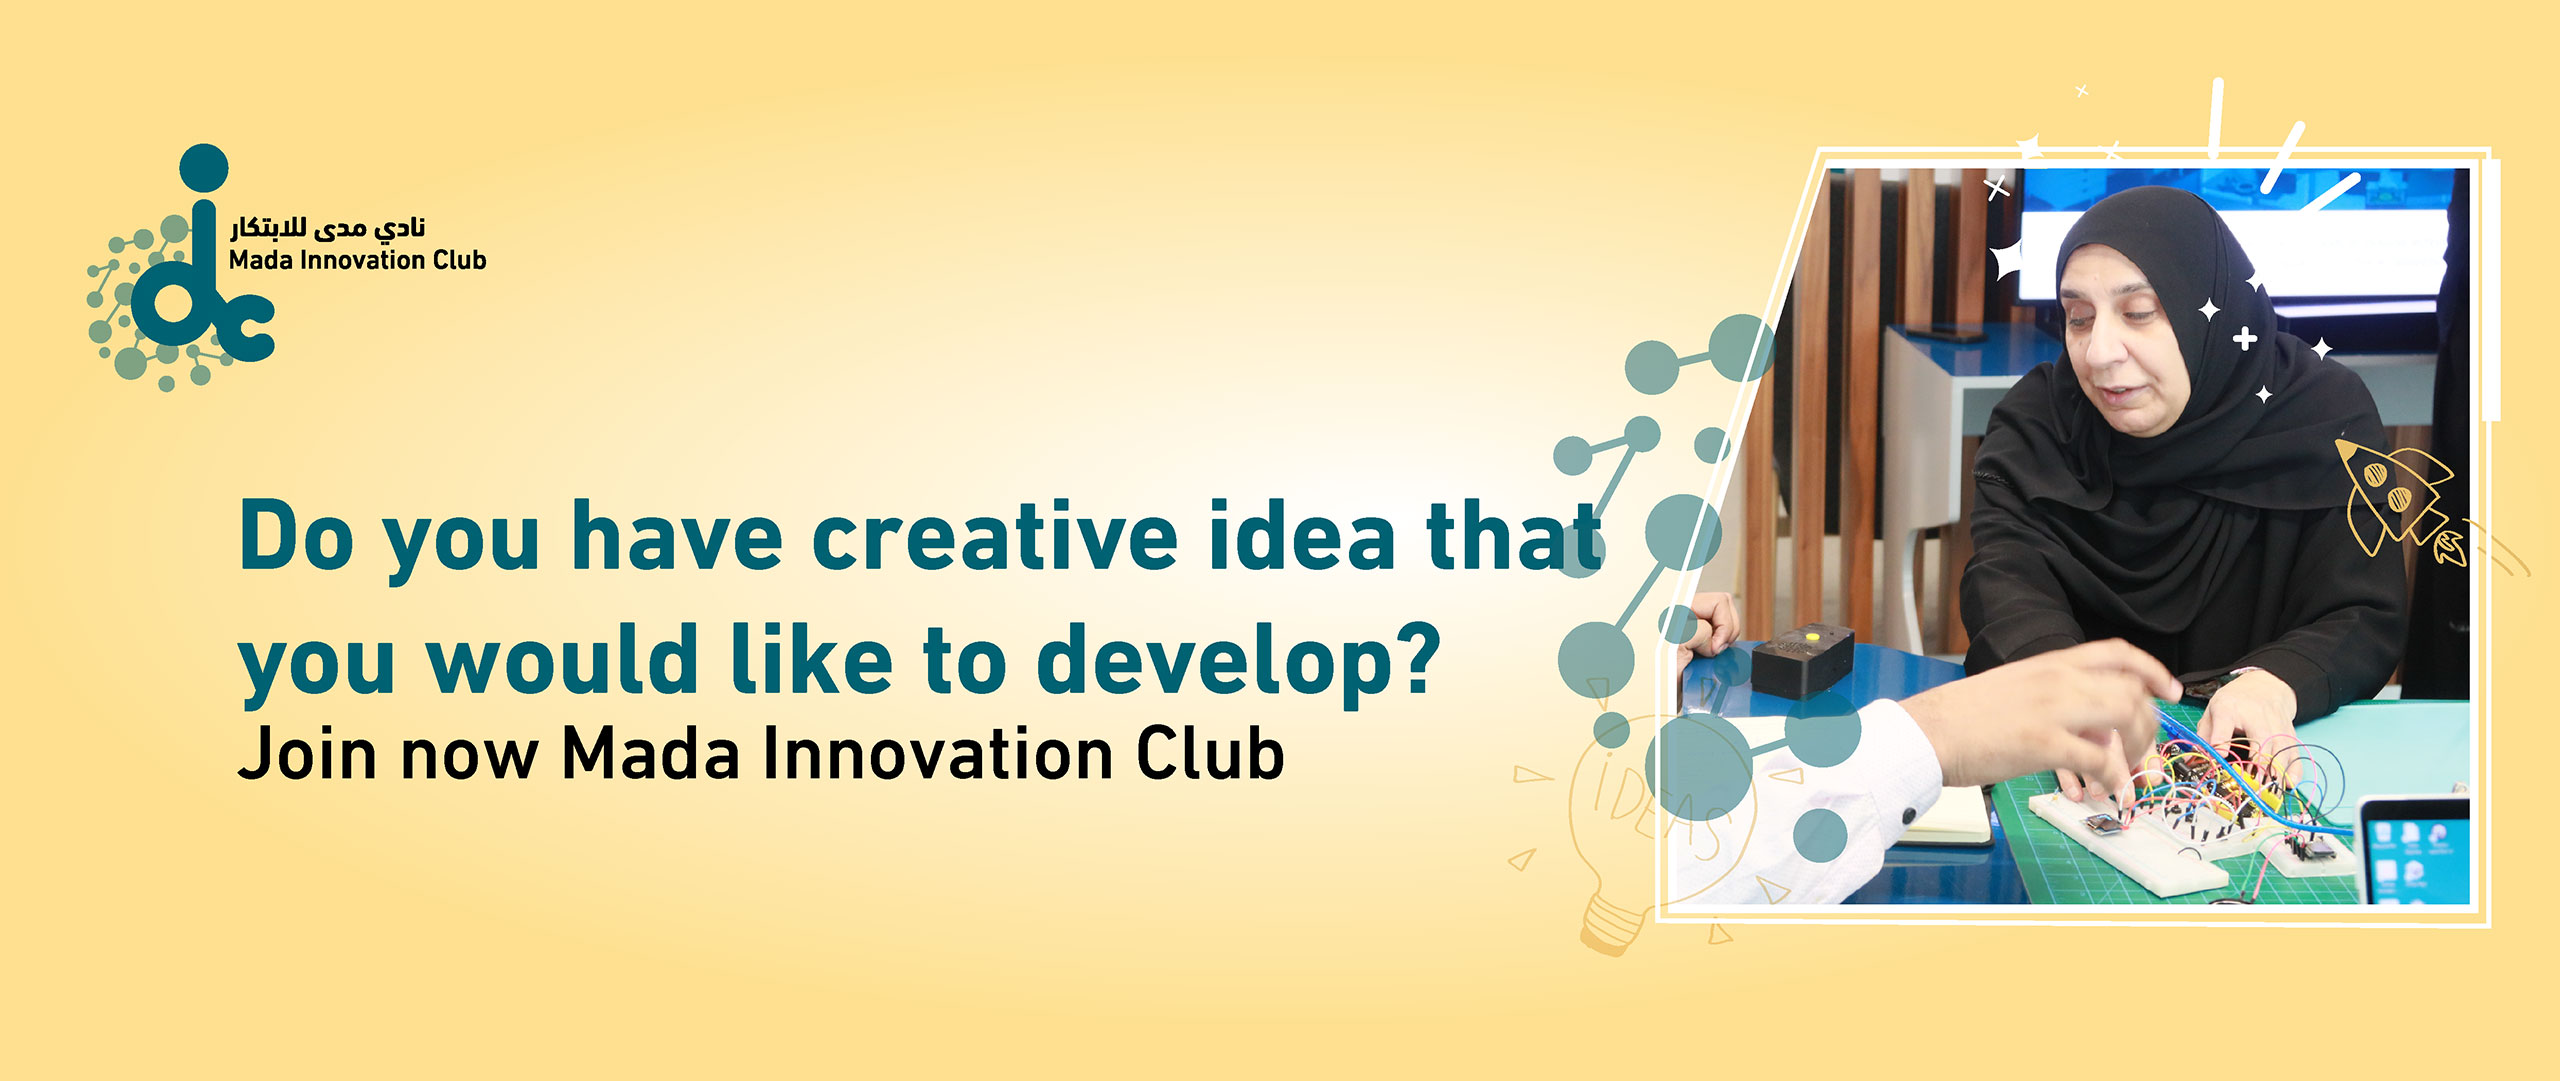 Mada Innovation Club